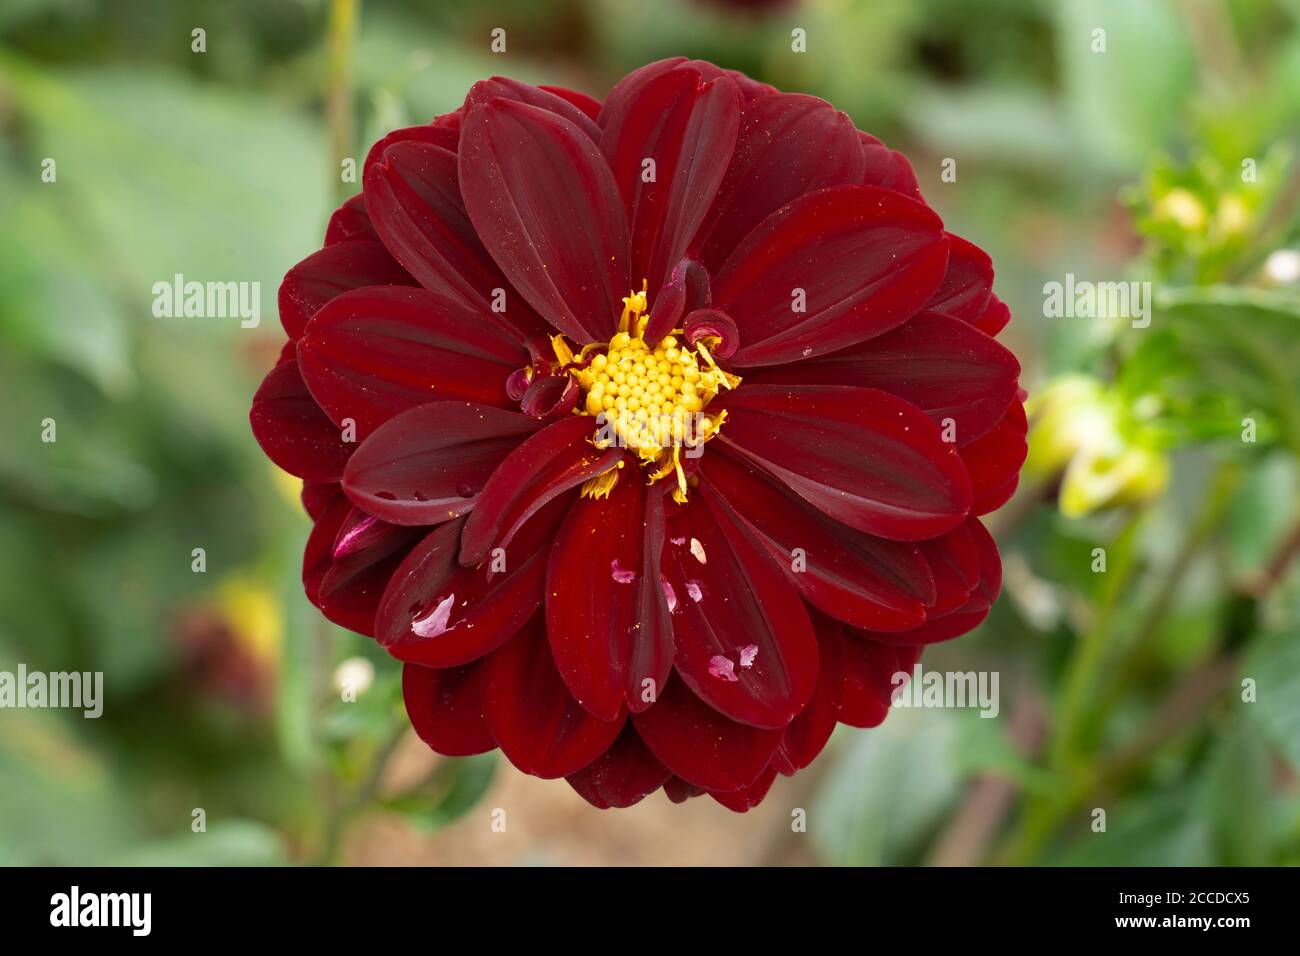 Intenso negro semi doble rojo piedra flor Dahlia con un centro amarillo compacto y gotas de lluvia en los pétalos, de la familia Asteraceae, agosto, Austria Foto de stock